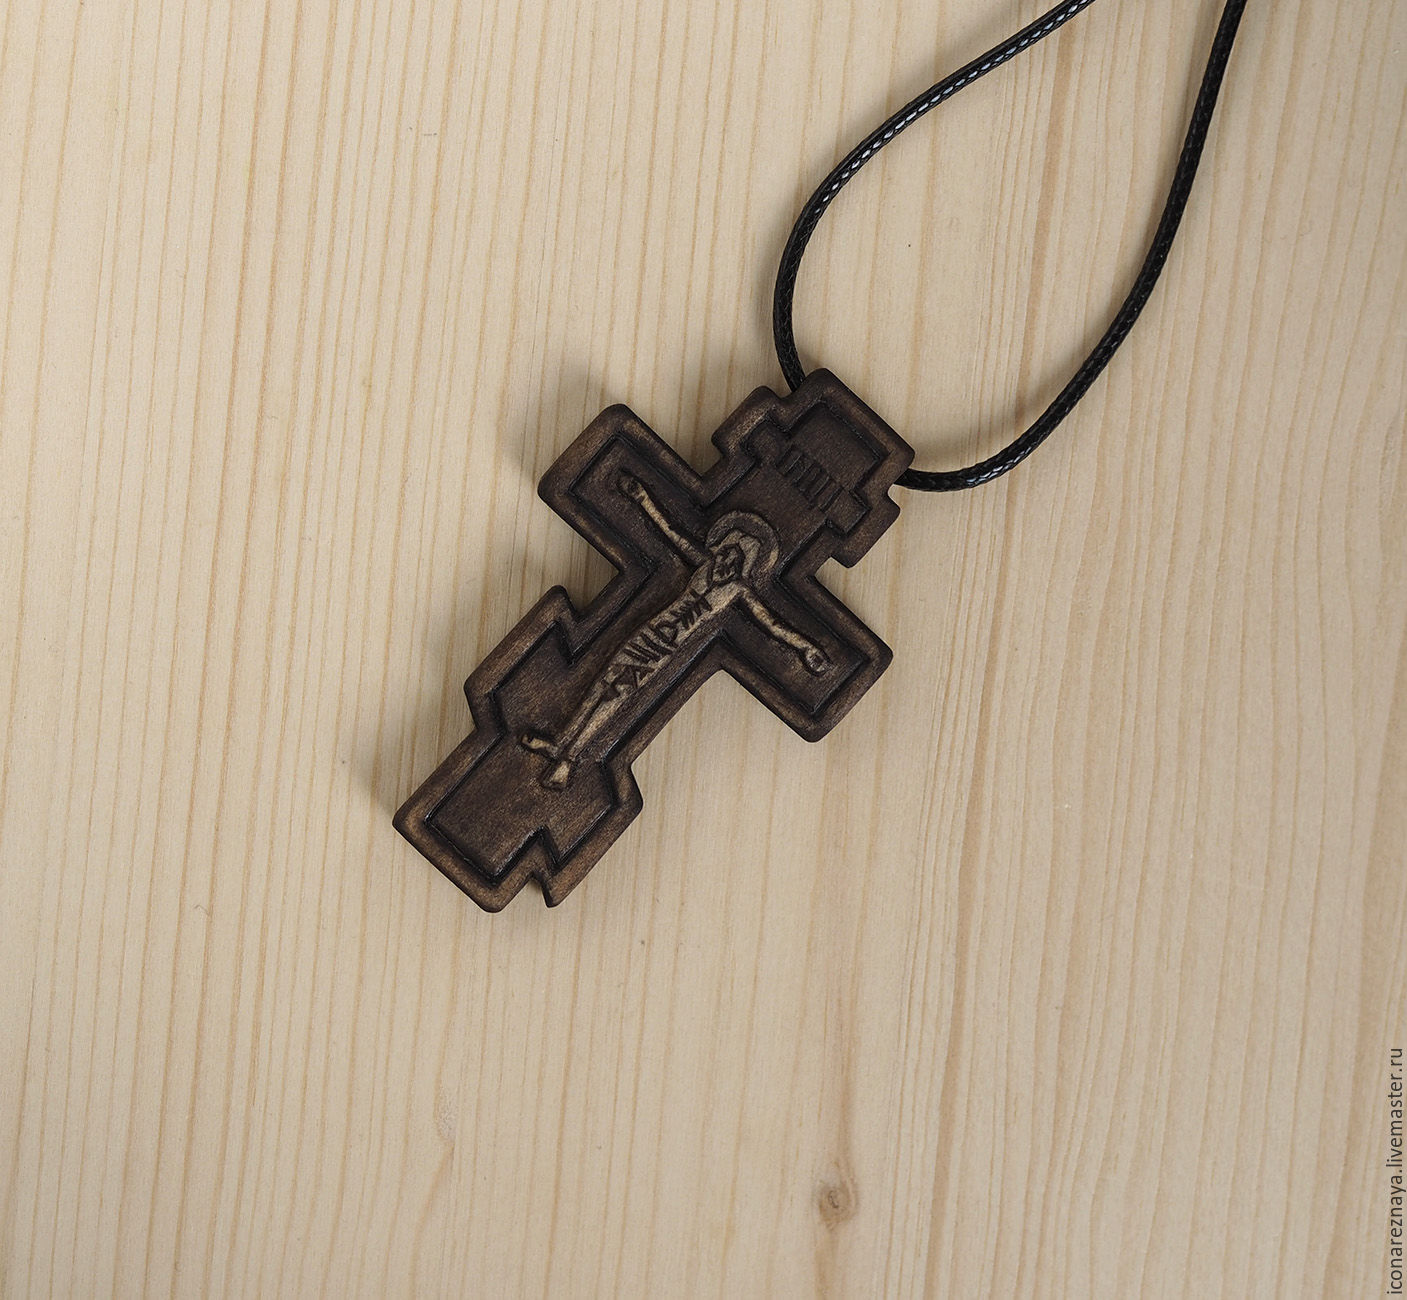 Купить нательный деревянный. Крест нательный деревянный. Деревянный крест на шею. Нательный крестик из дерева. Крестик православный деревянный.